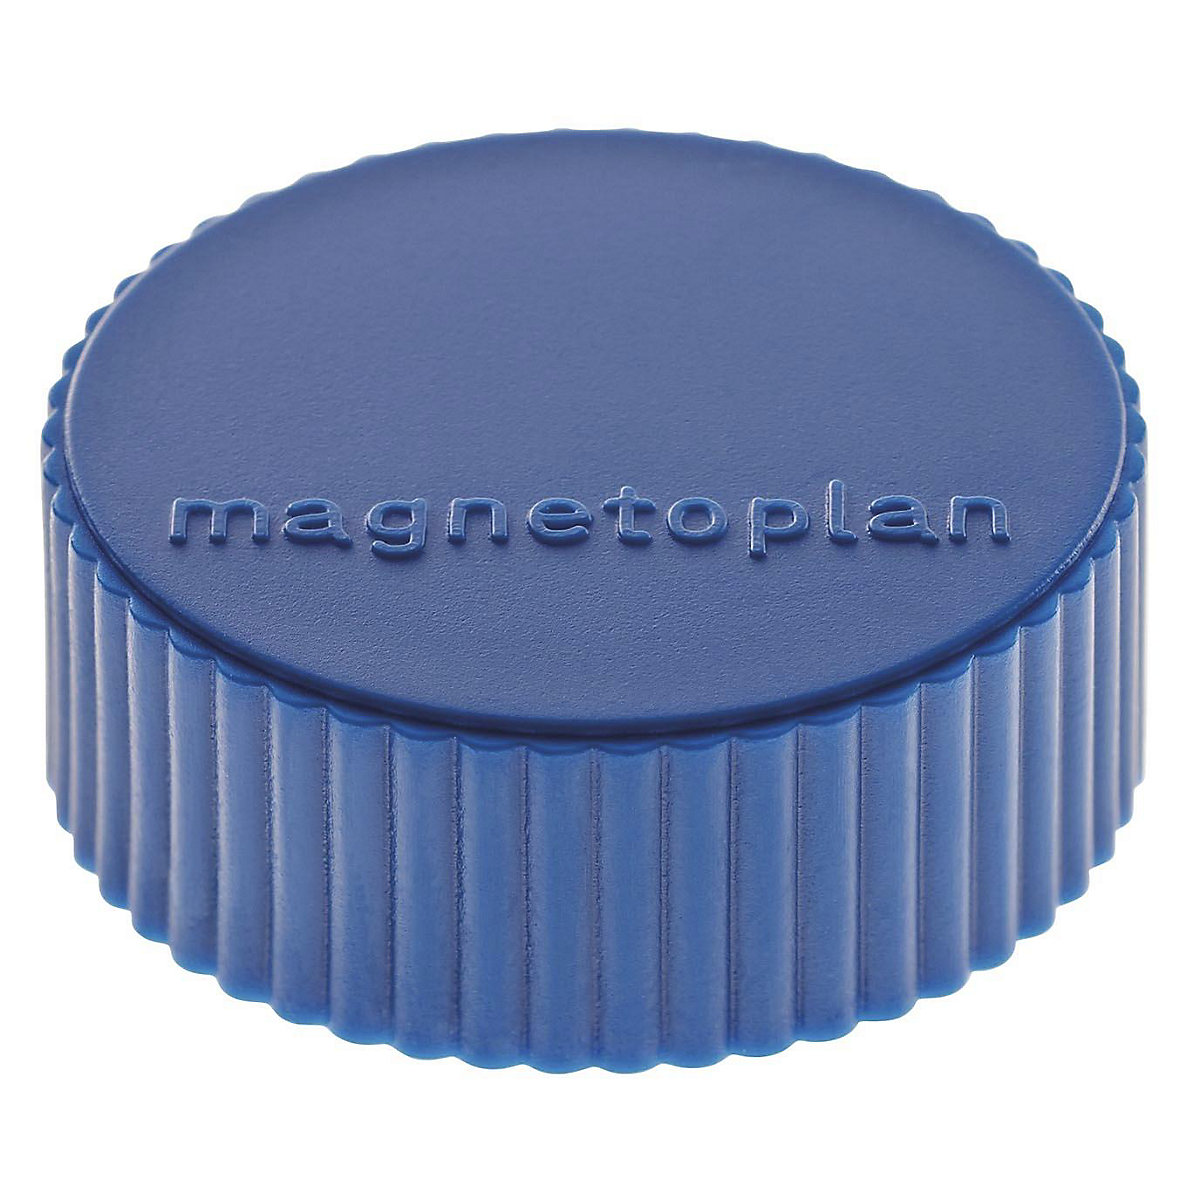 Plot magnétique DISCOFIX MAGNUM – magnetoplan, Ø 34 mm, lot de 50, bleu foncé